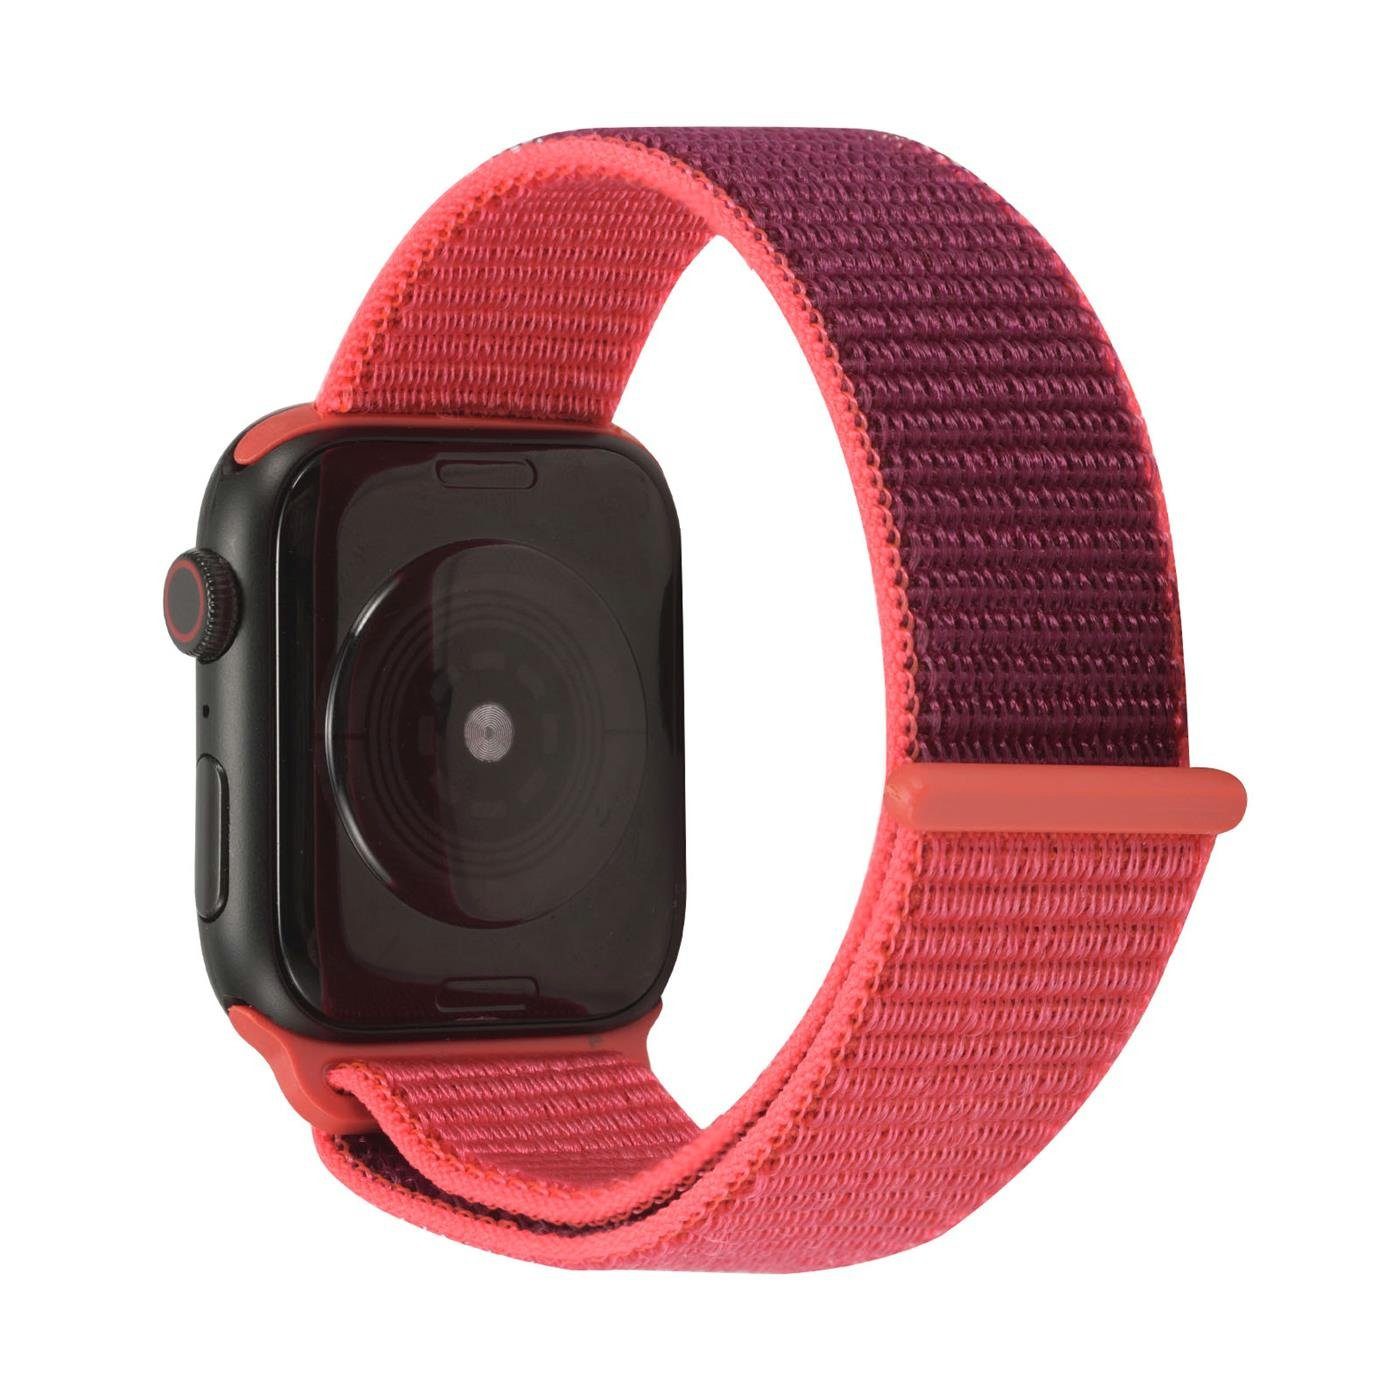 Watch Band Klettverschluss für Uhren Stoff mit Nylon 45mm Rot Serie CoolGadget 7 Smartwatch-Armband mit Ersatz Gehäuse, Apple